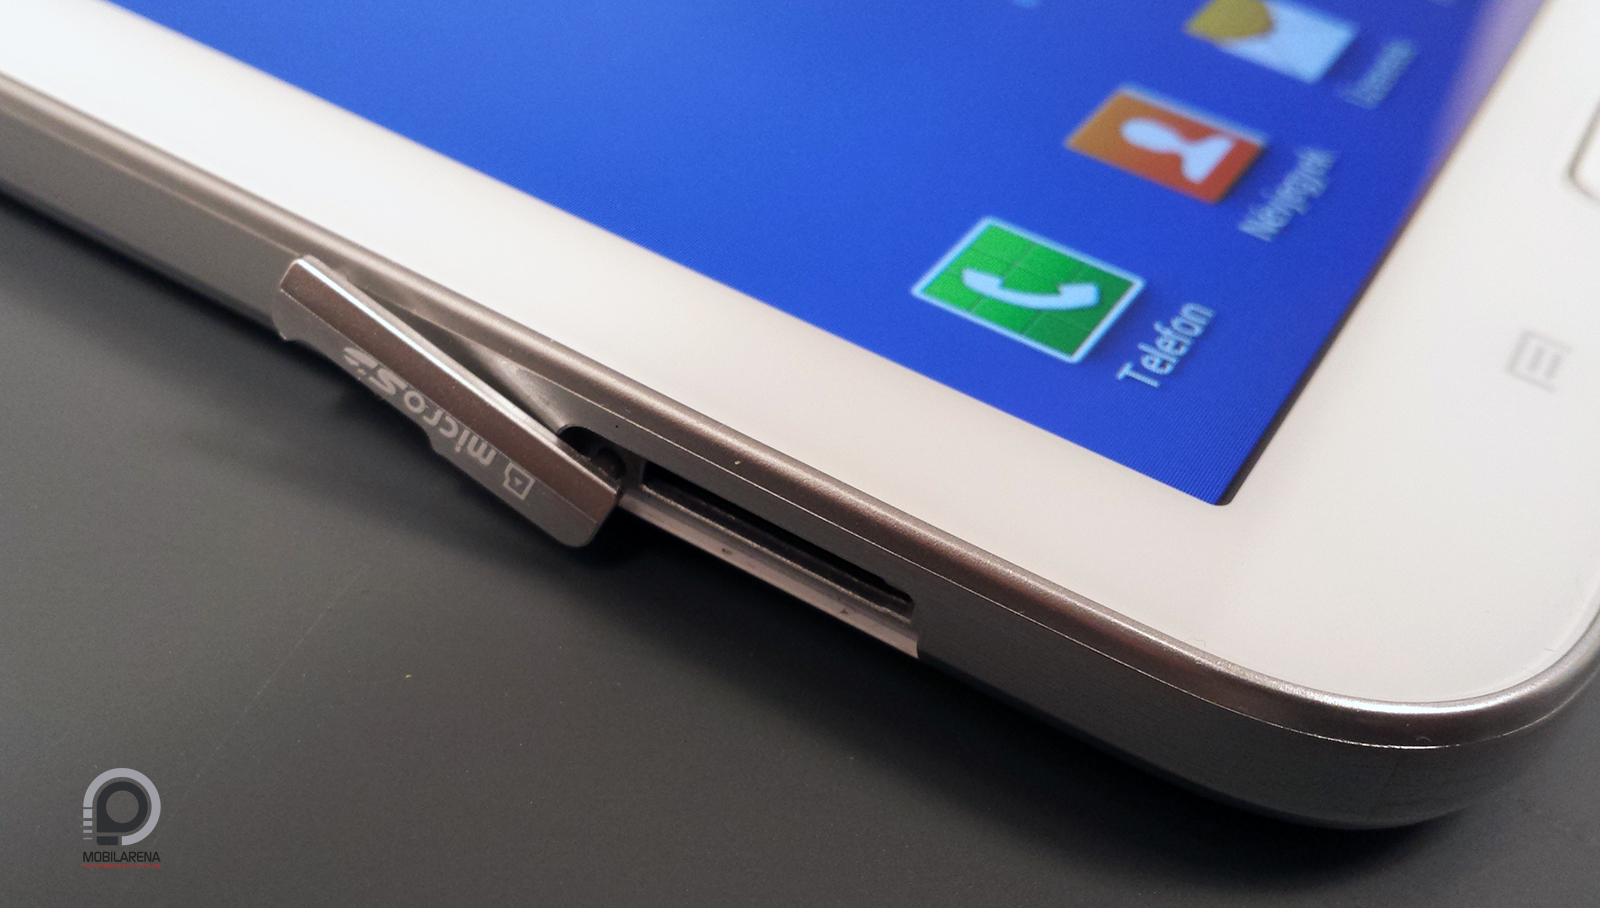 Samsung Galaxy Tab 3 7.0 - még, ennyi nem elég - Mobilarena Tablet teszt